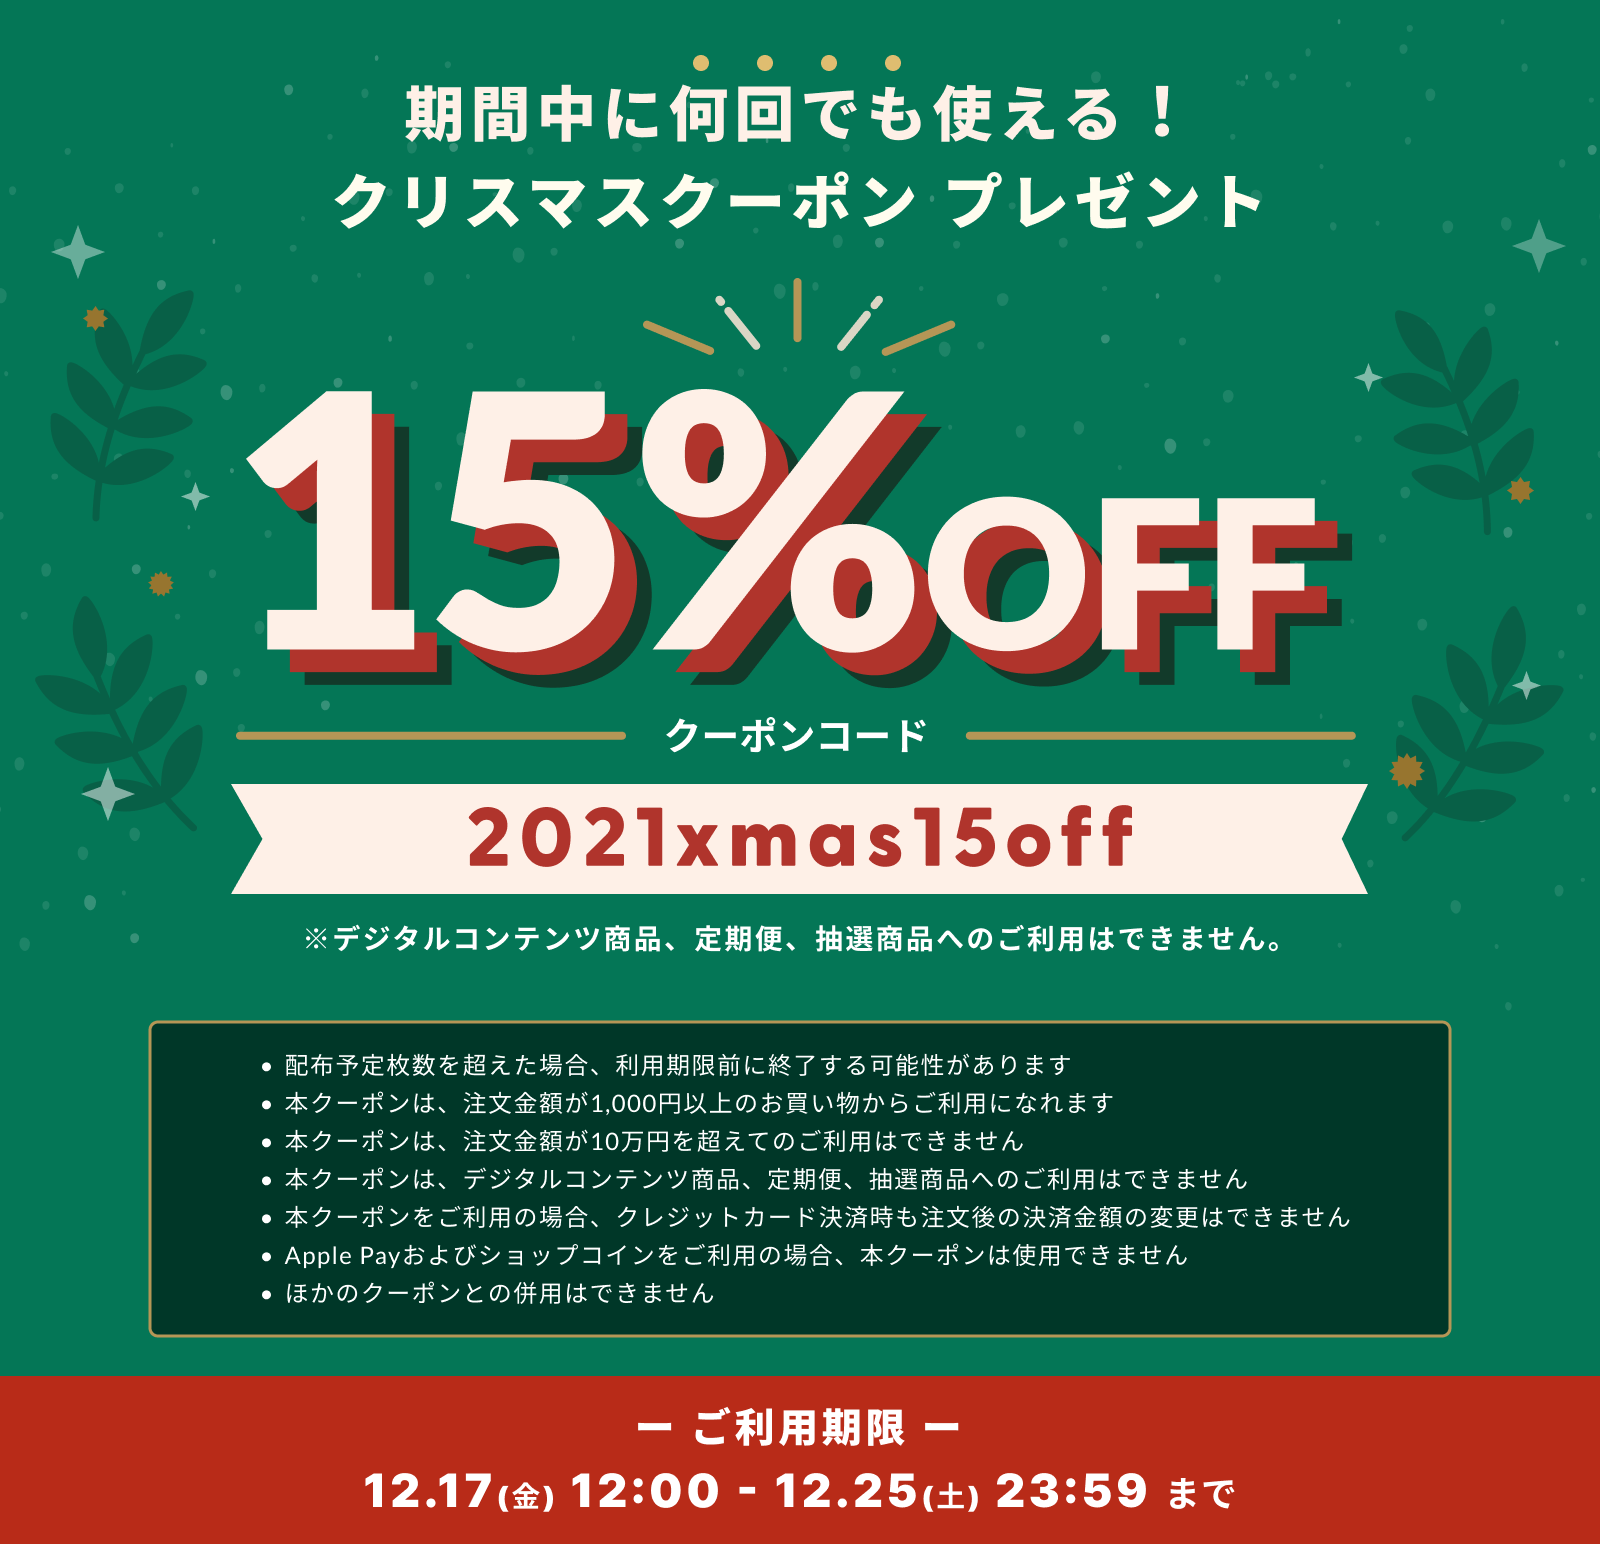 【12/25まで】15%OFFクーポン